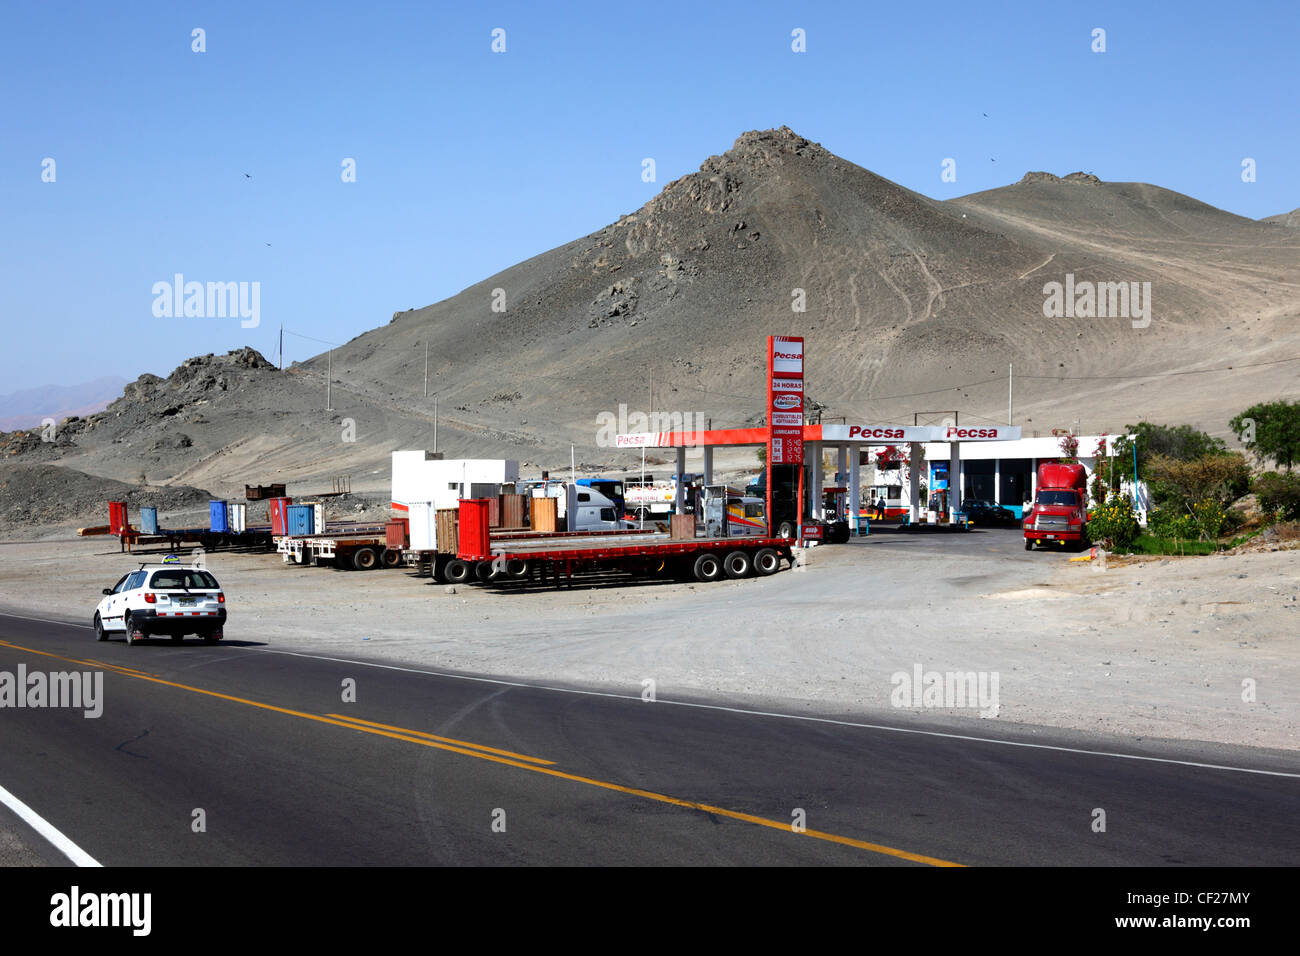 Stazione di servizio su strada e benzina appartenente al consorzio privato PECSA (Peruana de combustibili S.A.), vicino a ILO, Perù Foto Stock